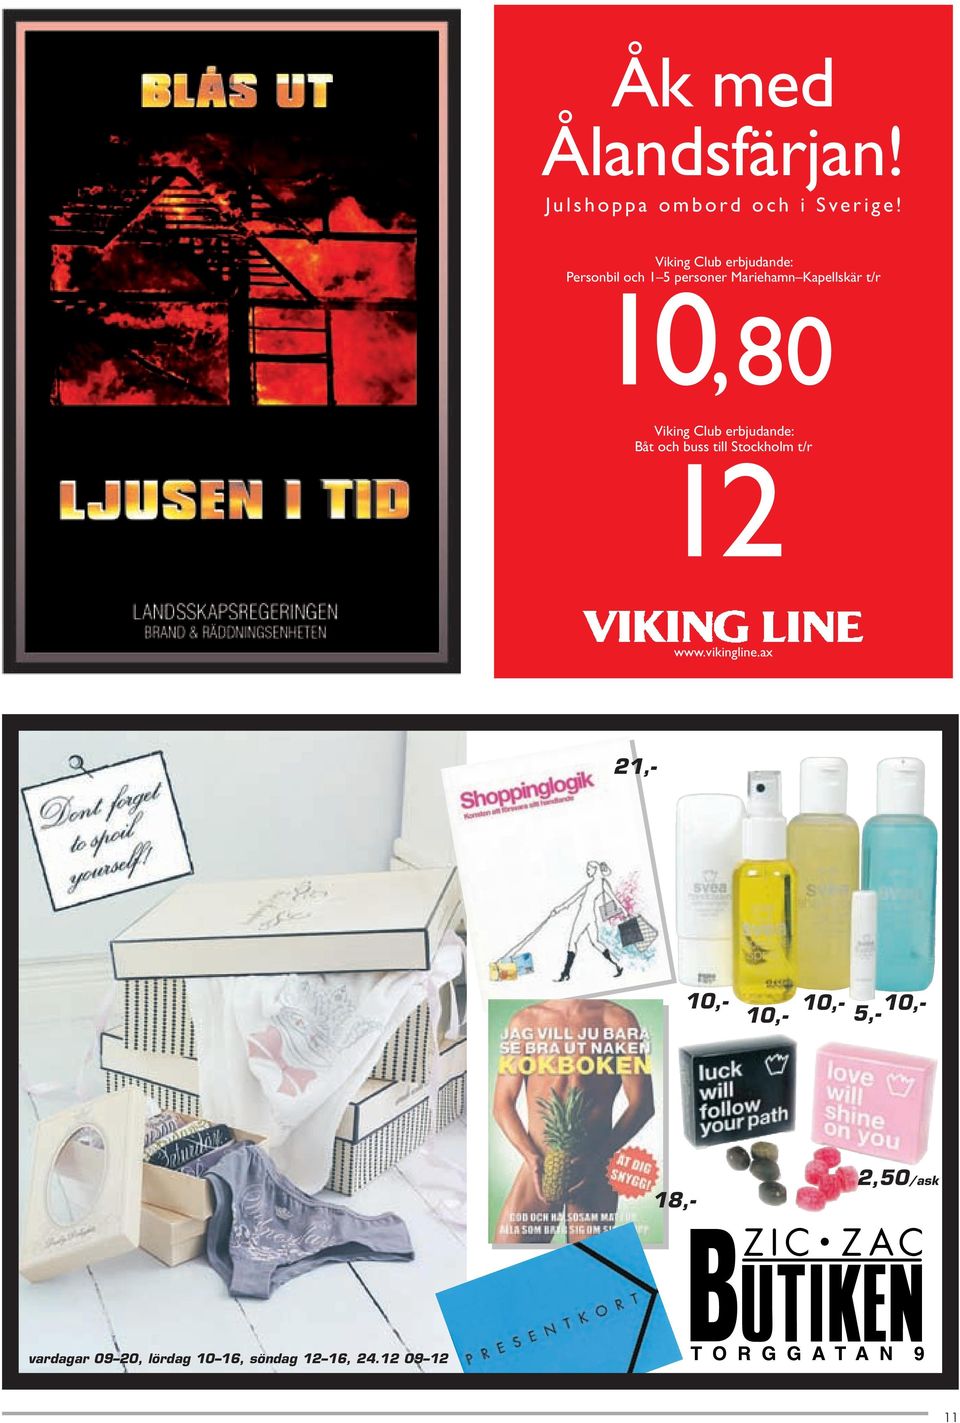 10,80 Viking Club erbjudande: Båt och buss till Stockholm t/r 12 www.